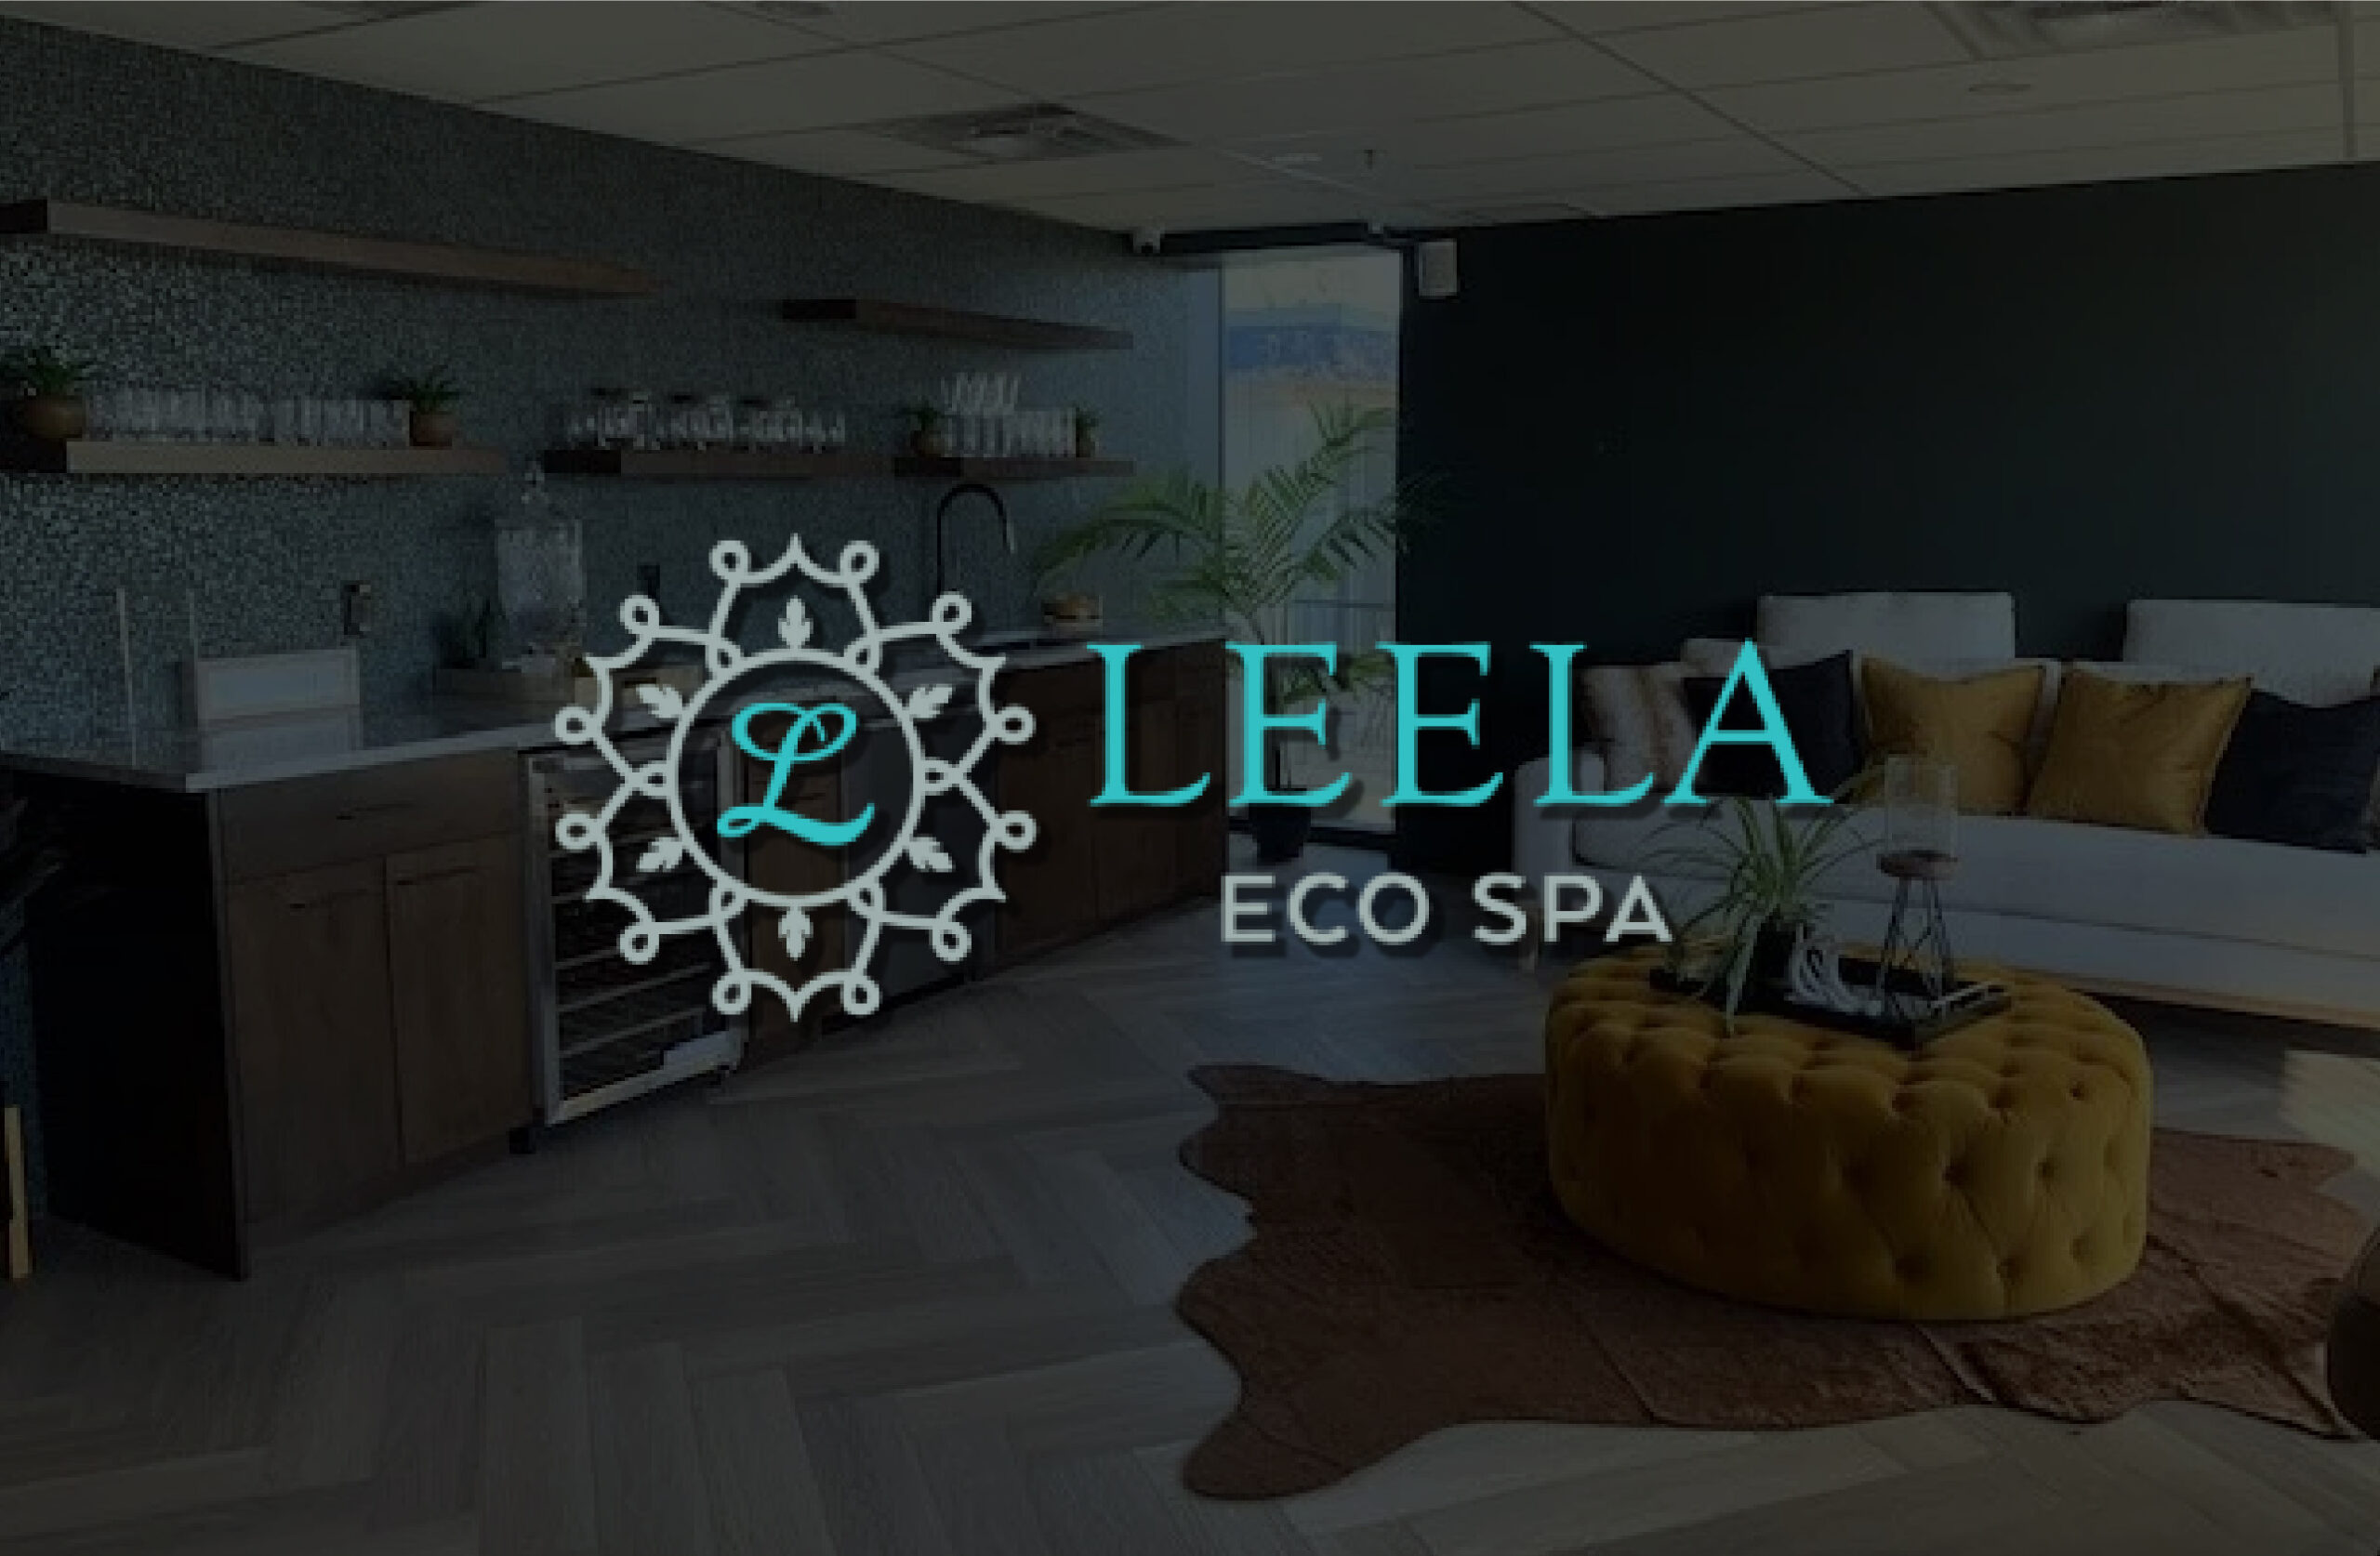 Leela Eco Spa